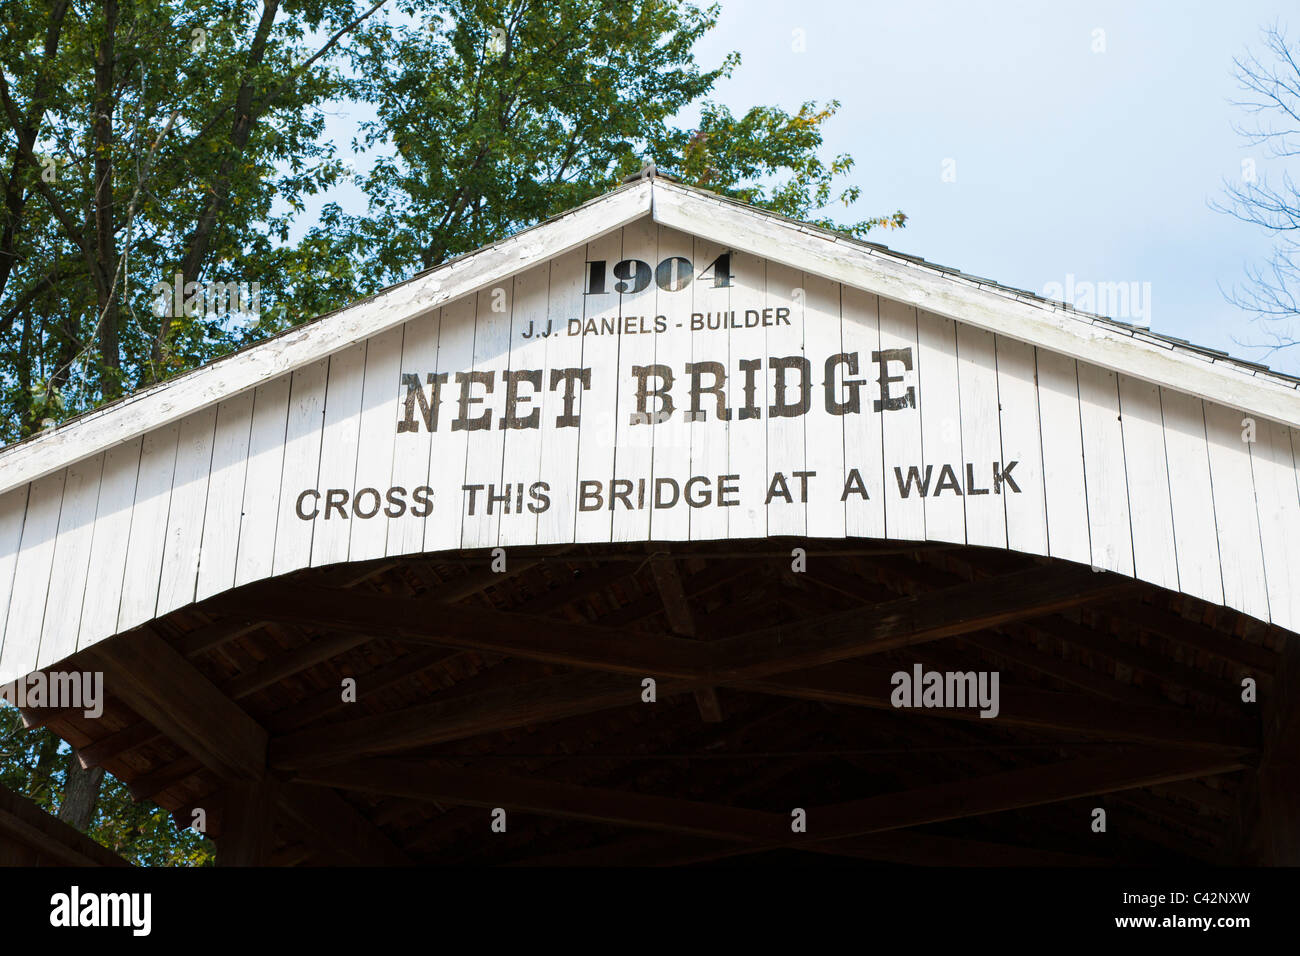 NEET Covered Bridge, erbaut im Jahre 1904 erstreckt sich über den kleinen Waschbär-Bach in der Nähe von Rockville in Parke County, Indiana, USA Stockfoto